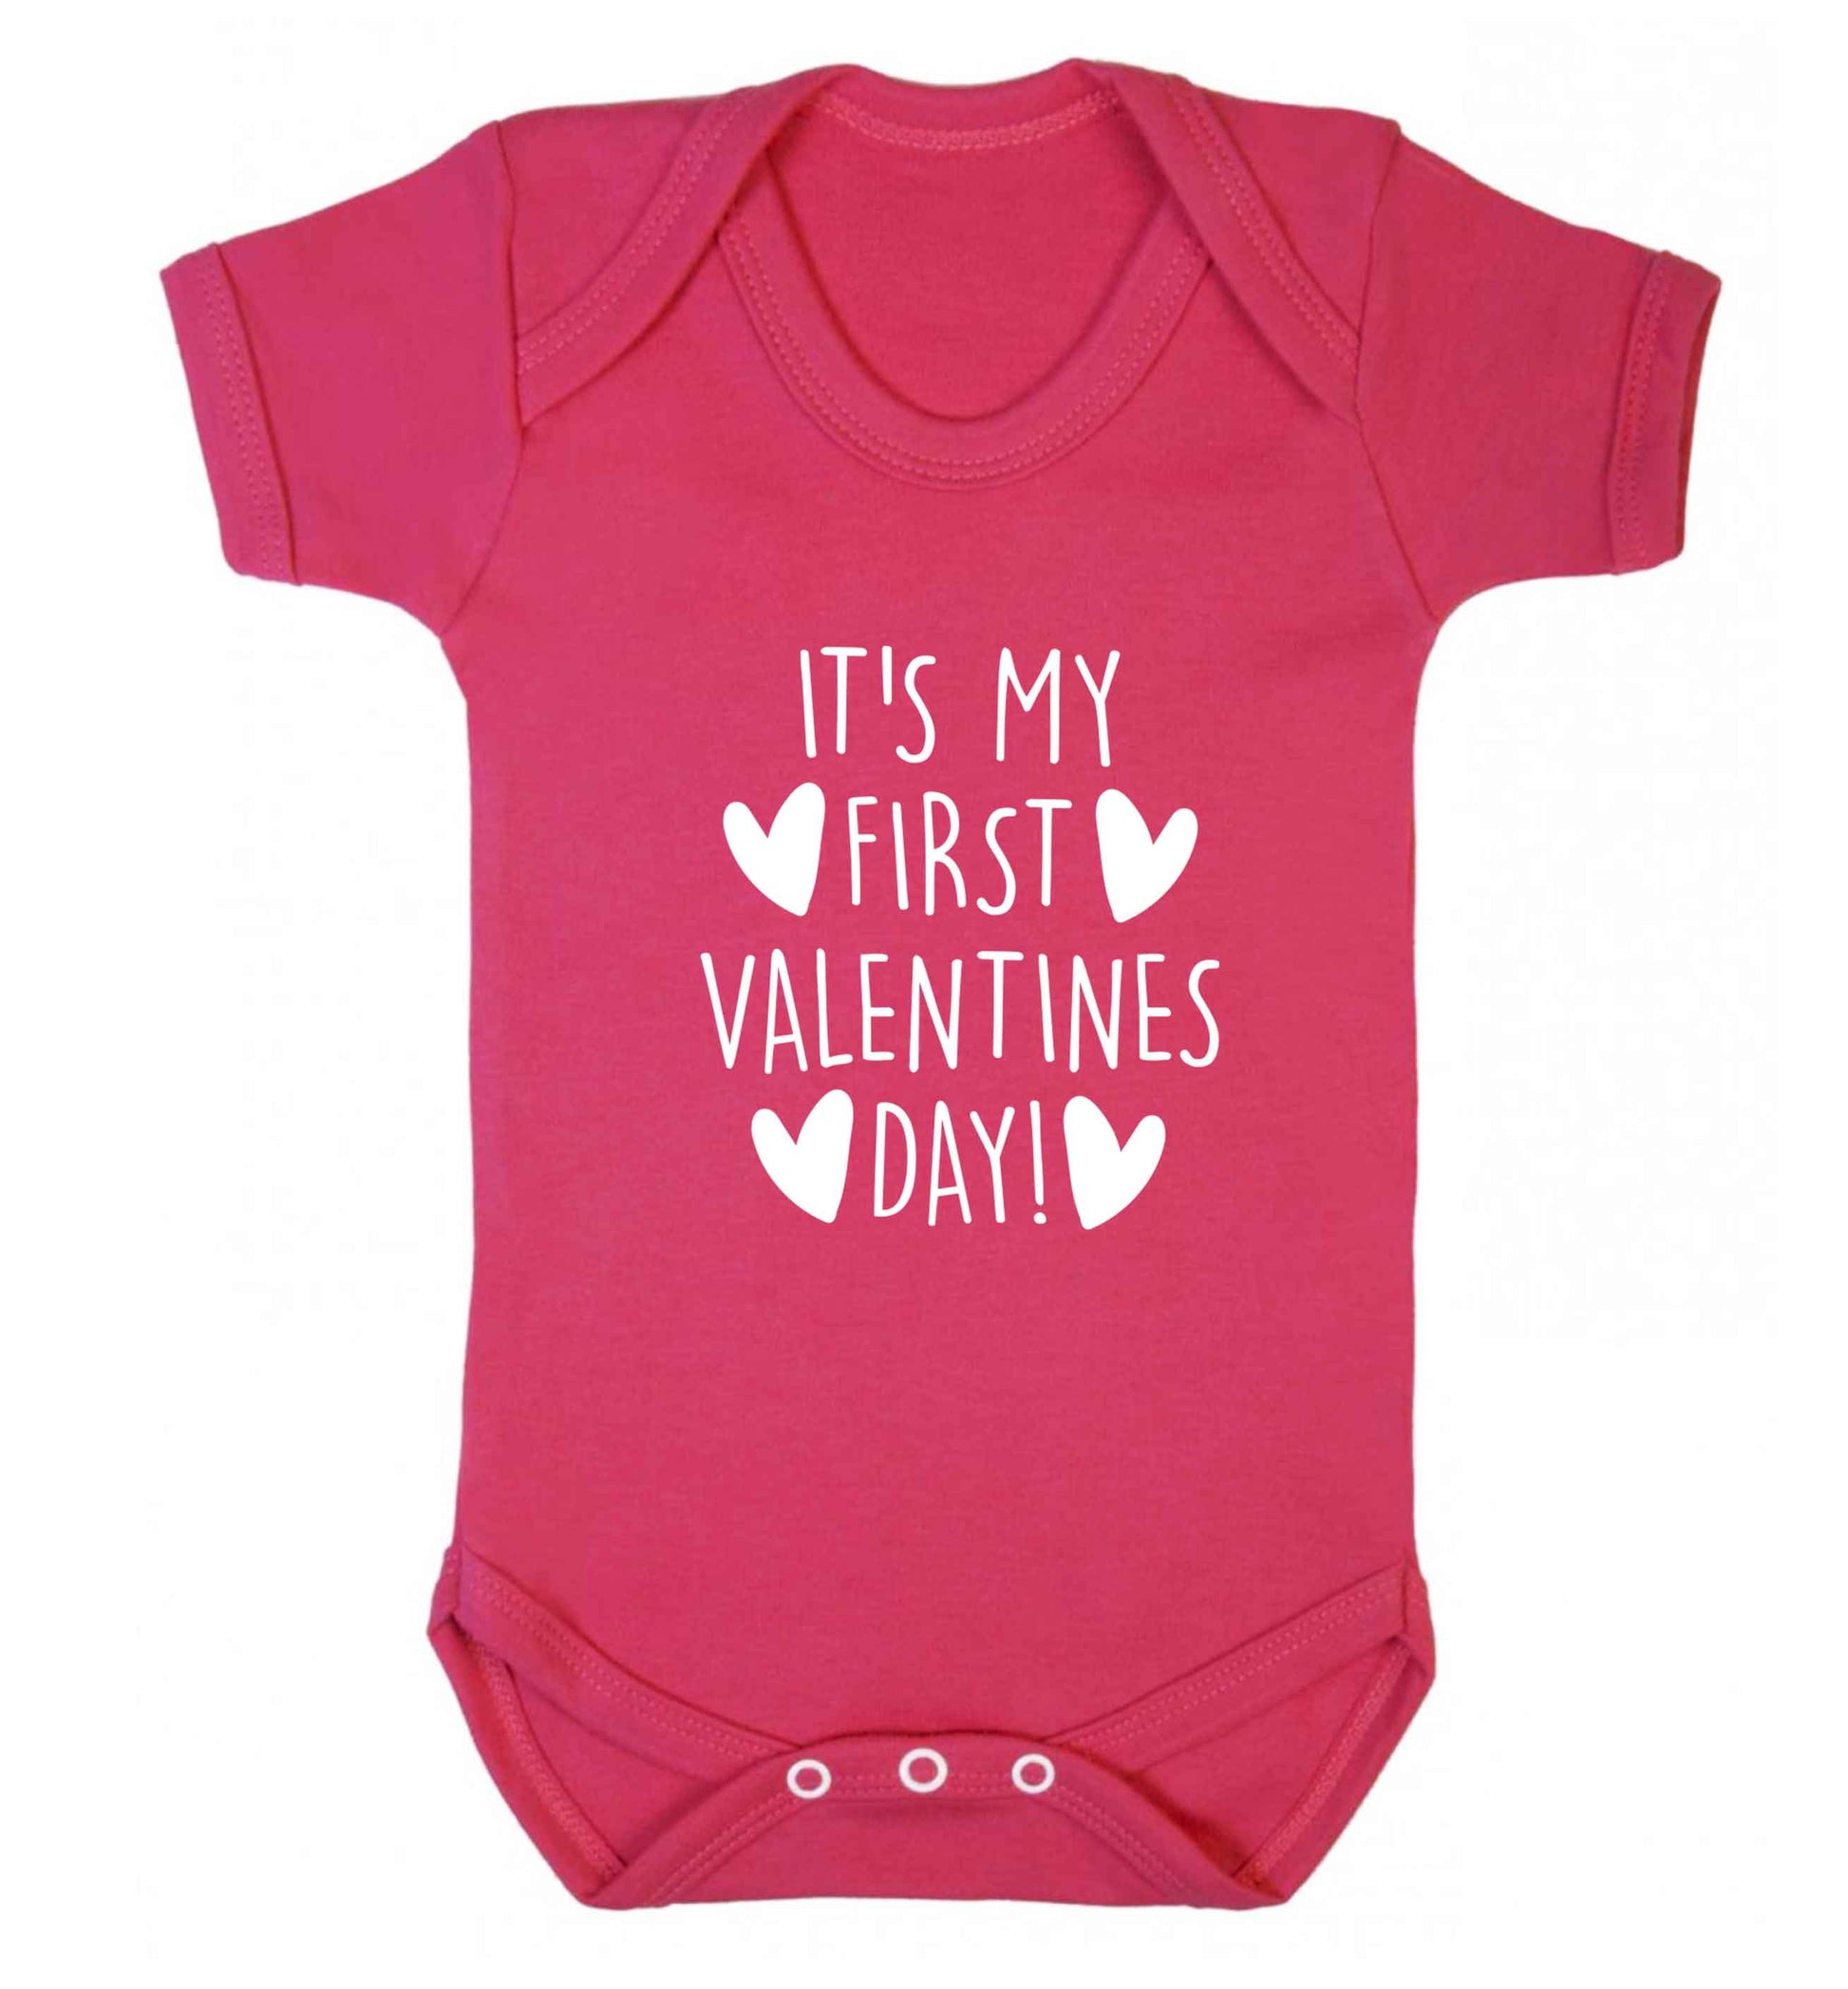 It's my first valentines day! baby vest dark pink 18-24 months